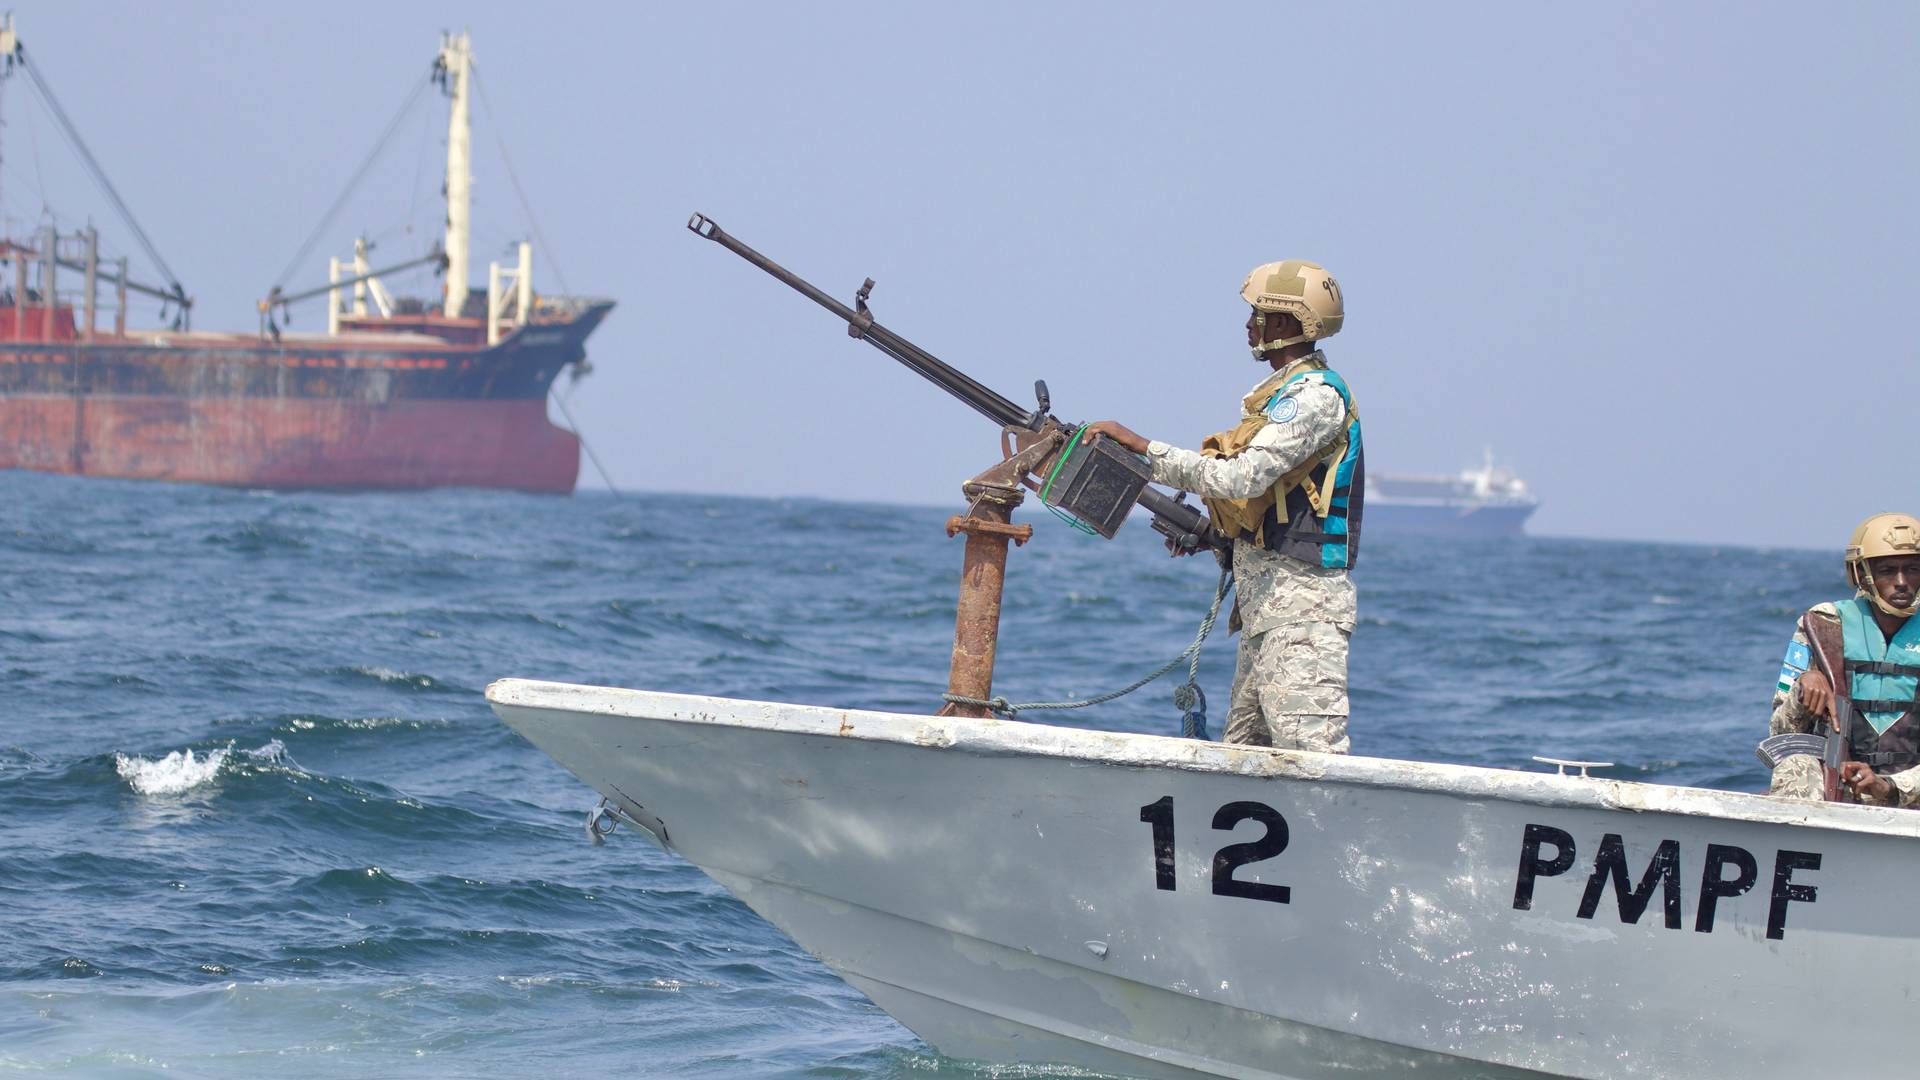 UK Maritime Trade Operations, UKMTO, skriver på sin hjemmeside, at et skib er blevet boardet 600 sømil fra Mogadishu, der er hovedstaden i Somalia.